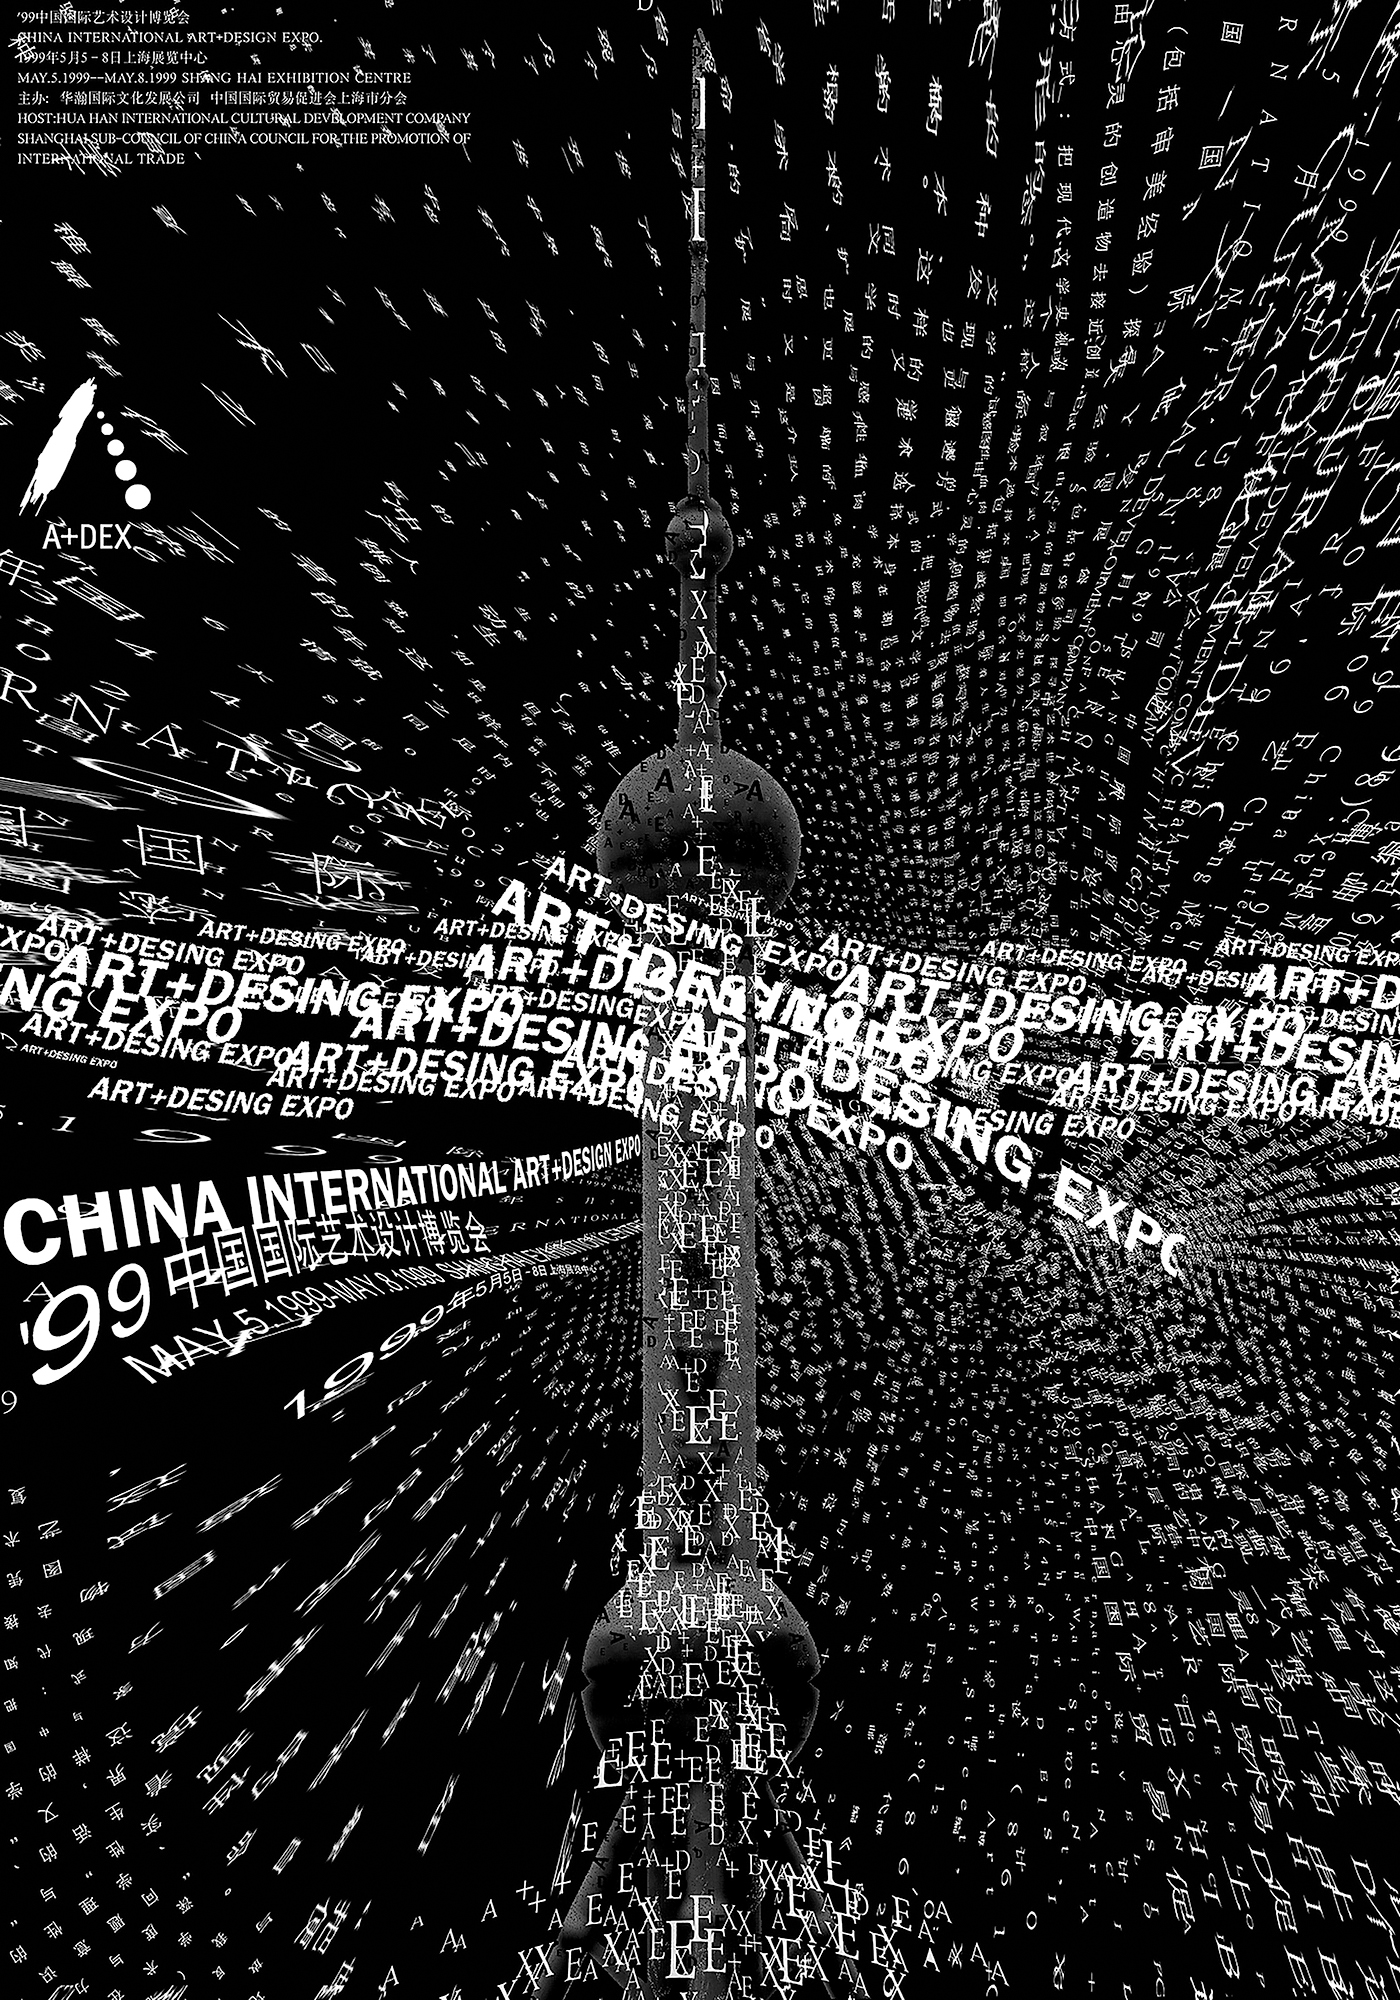 中国国际艺术设计博览会主题海报-1999